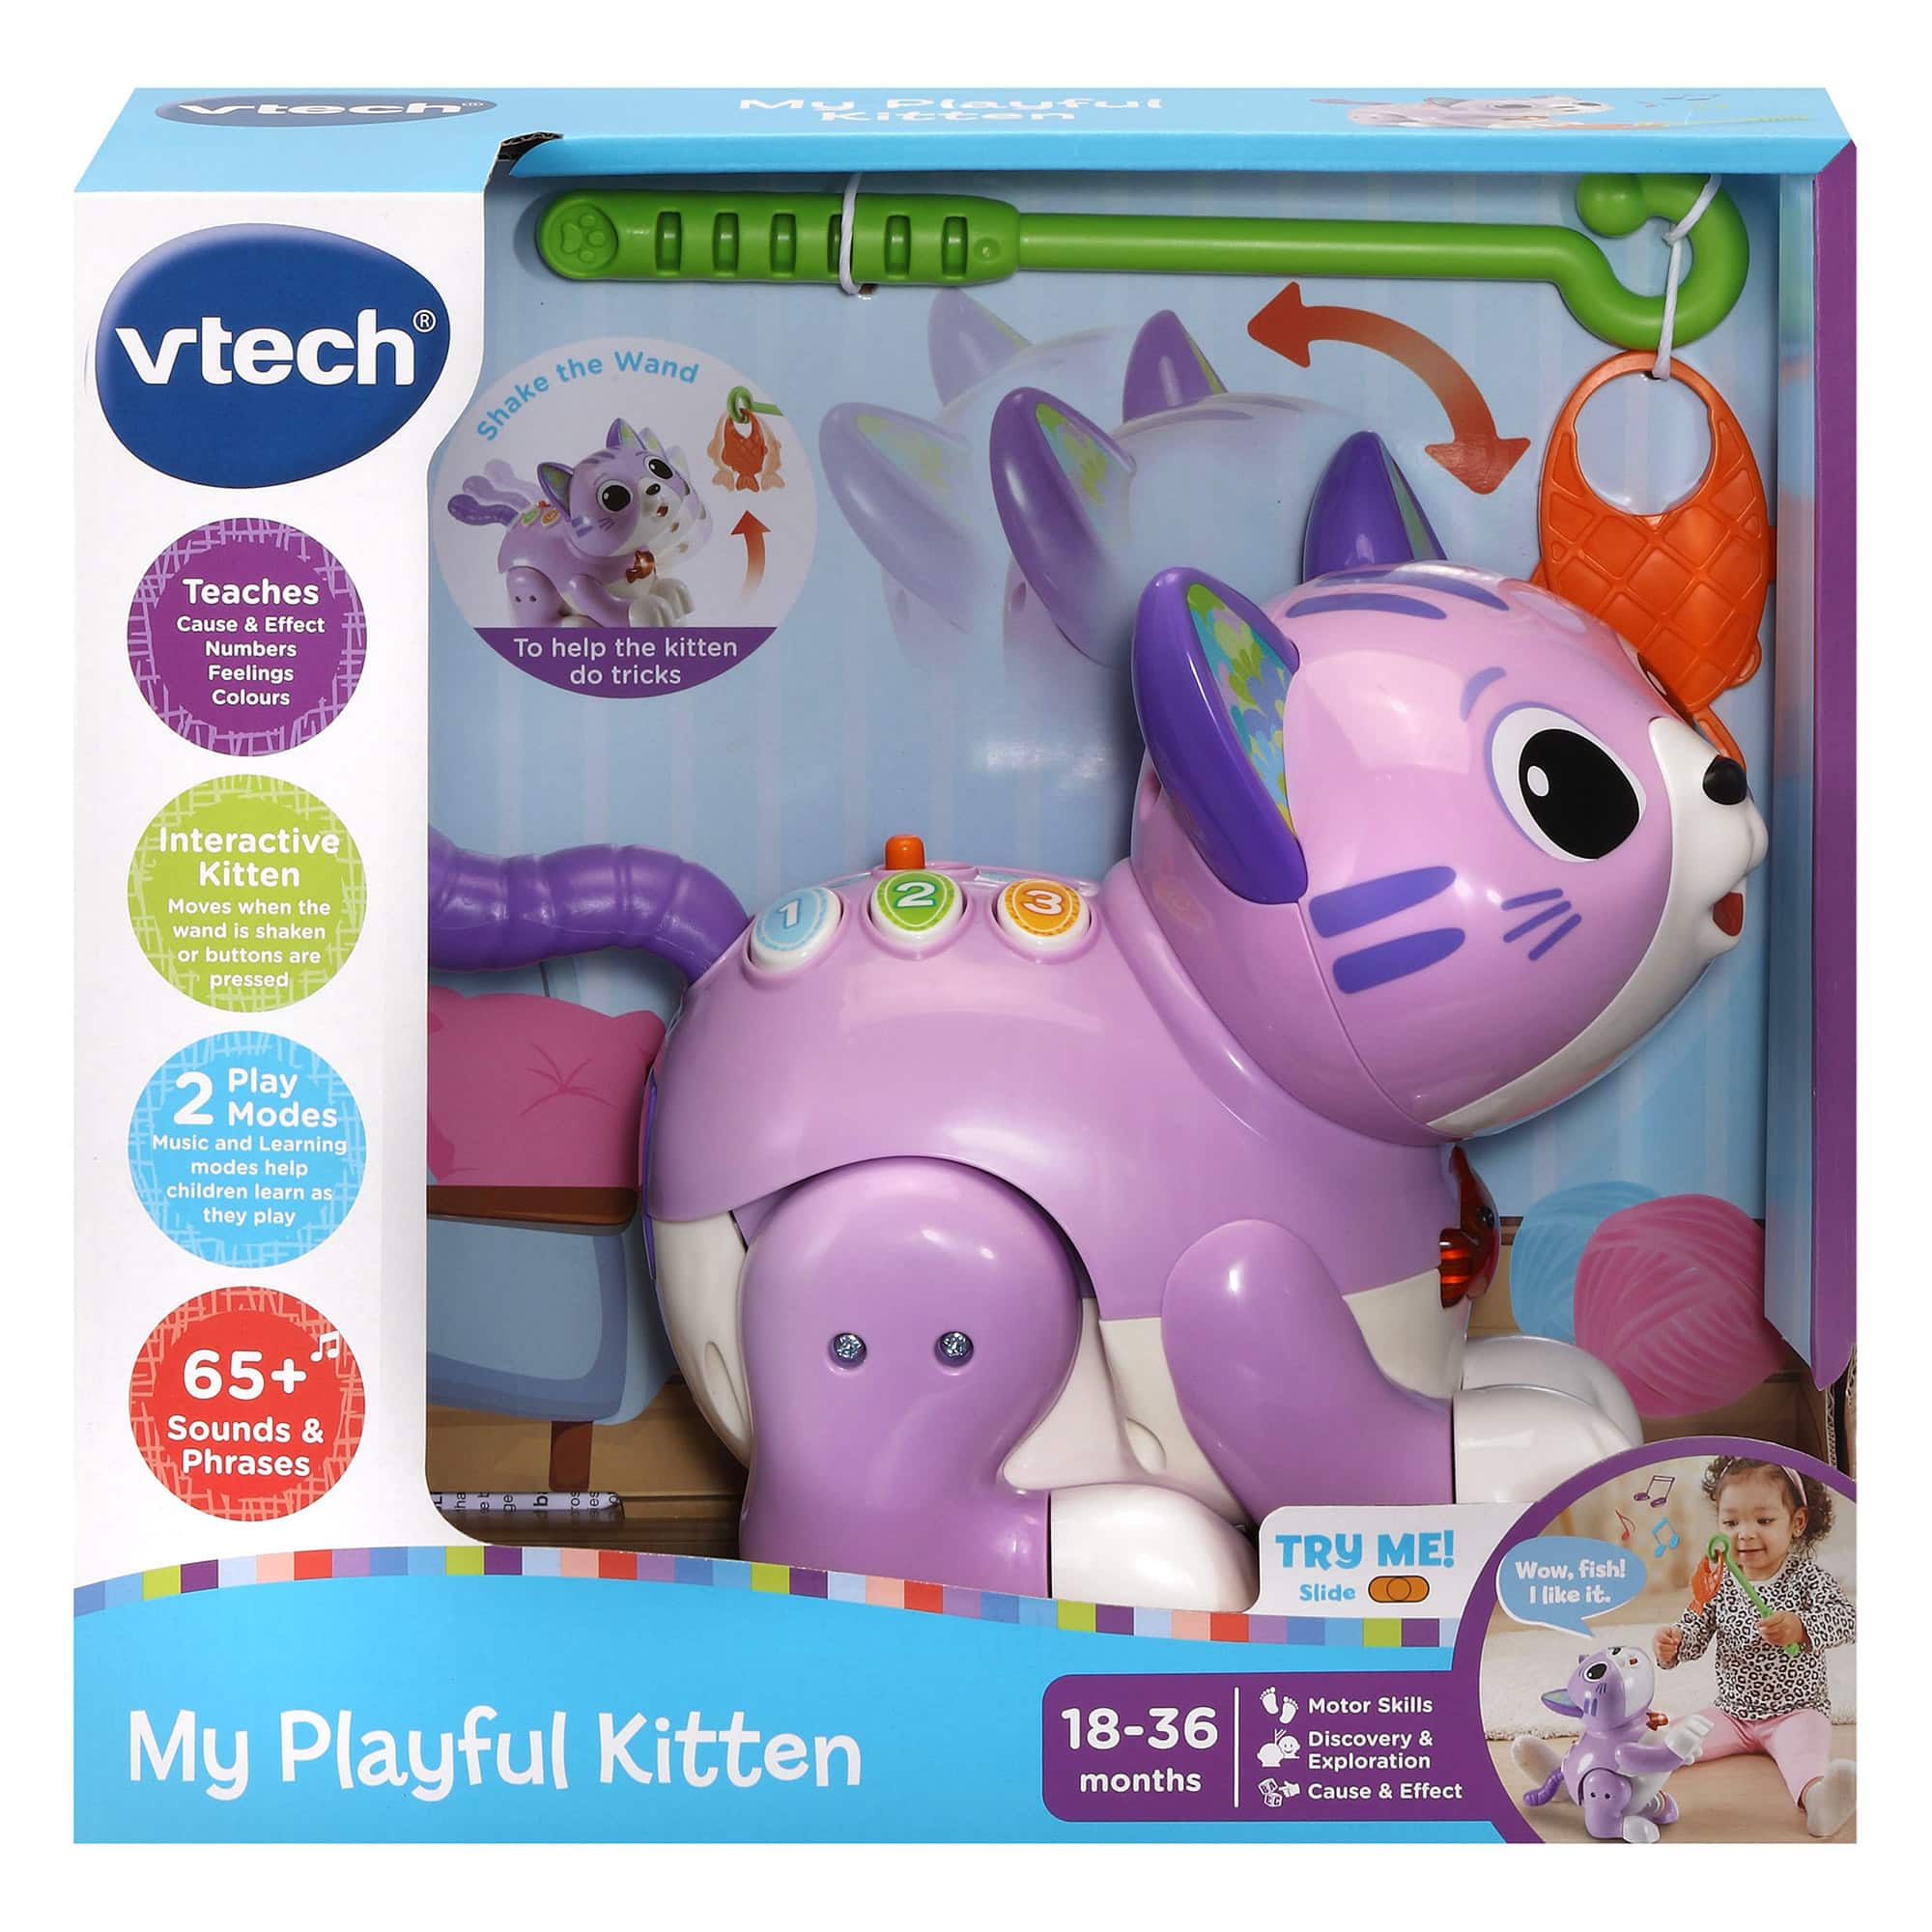 Vtech - My Playful Kitten